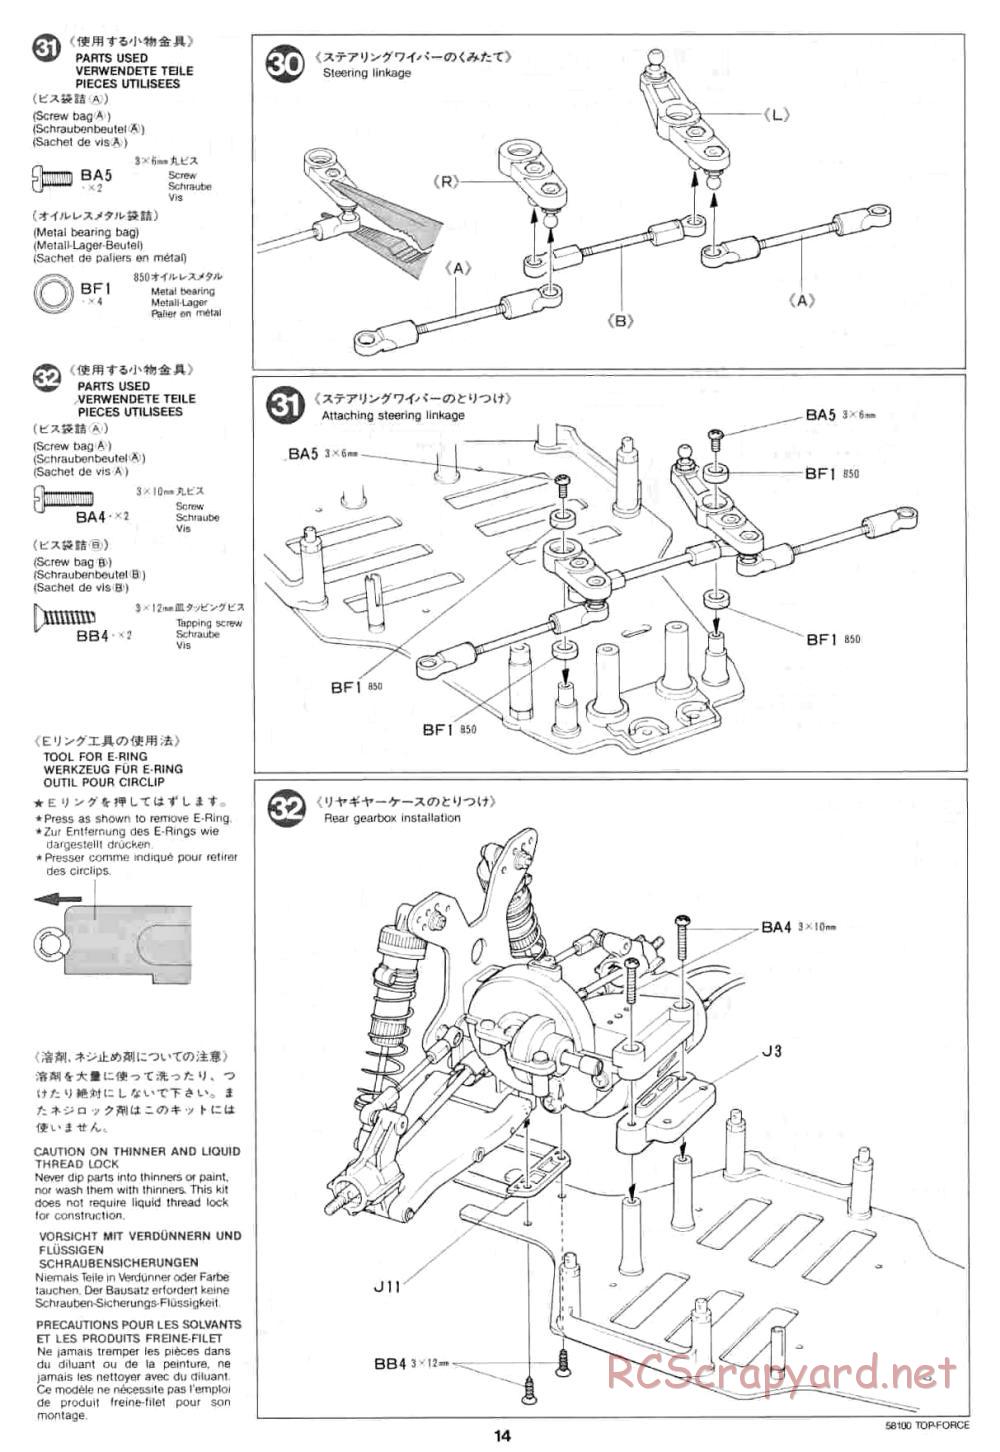 Tamiya - Top Force - 58100 - Manual - Page 14